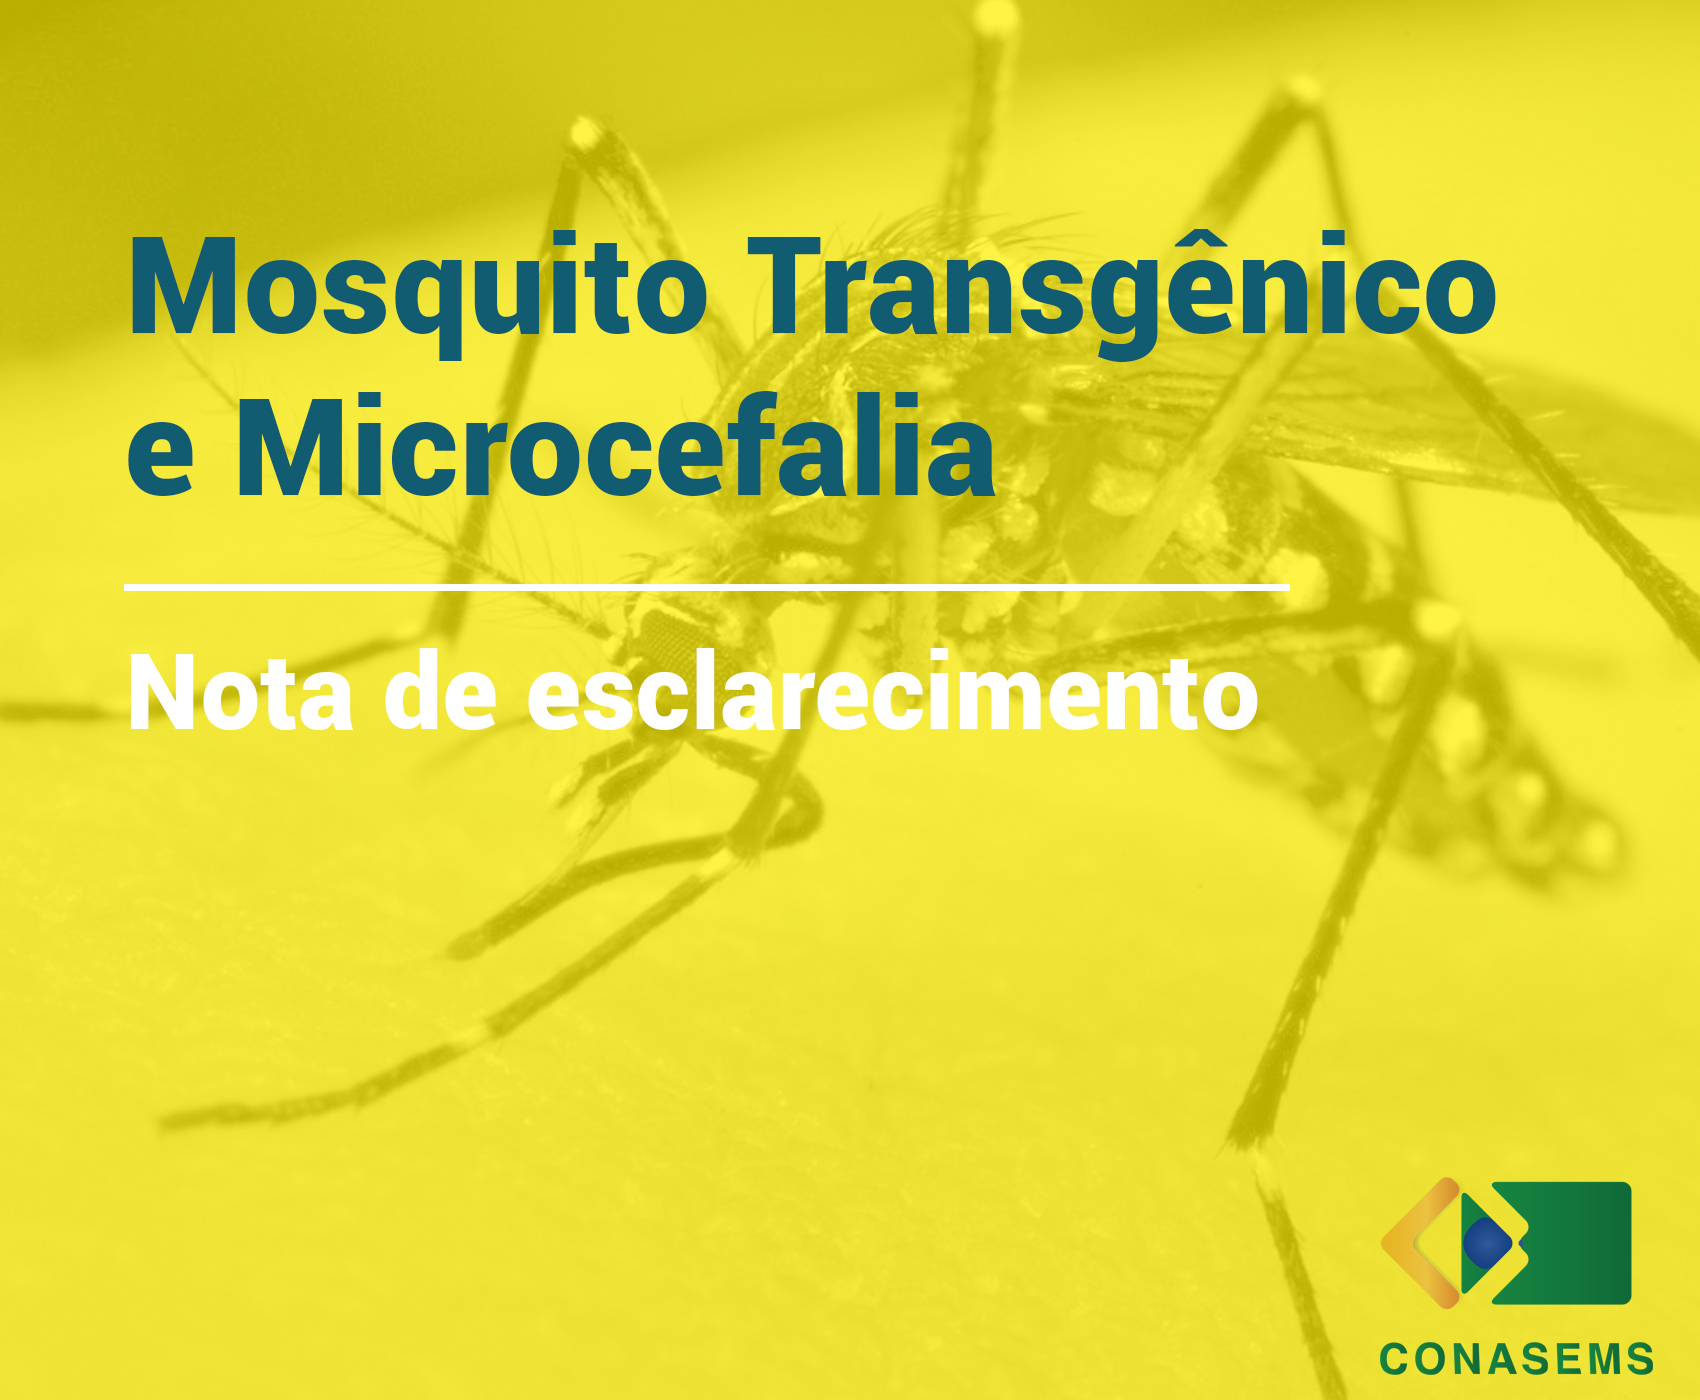 Conasems emite Nota de Esclarecimento sobre Microcefalia e mosquito transgênico